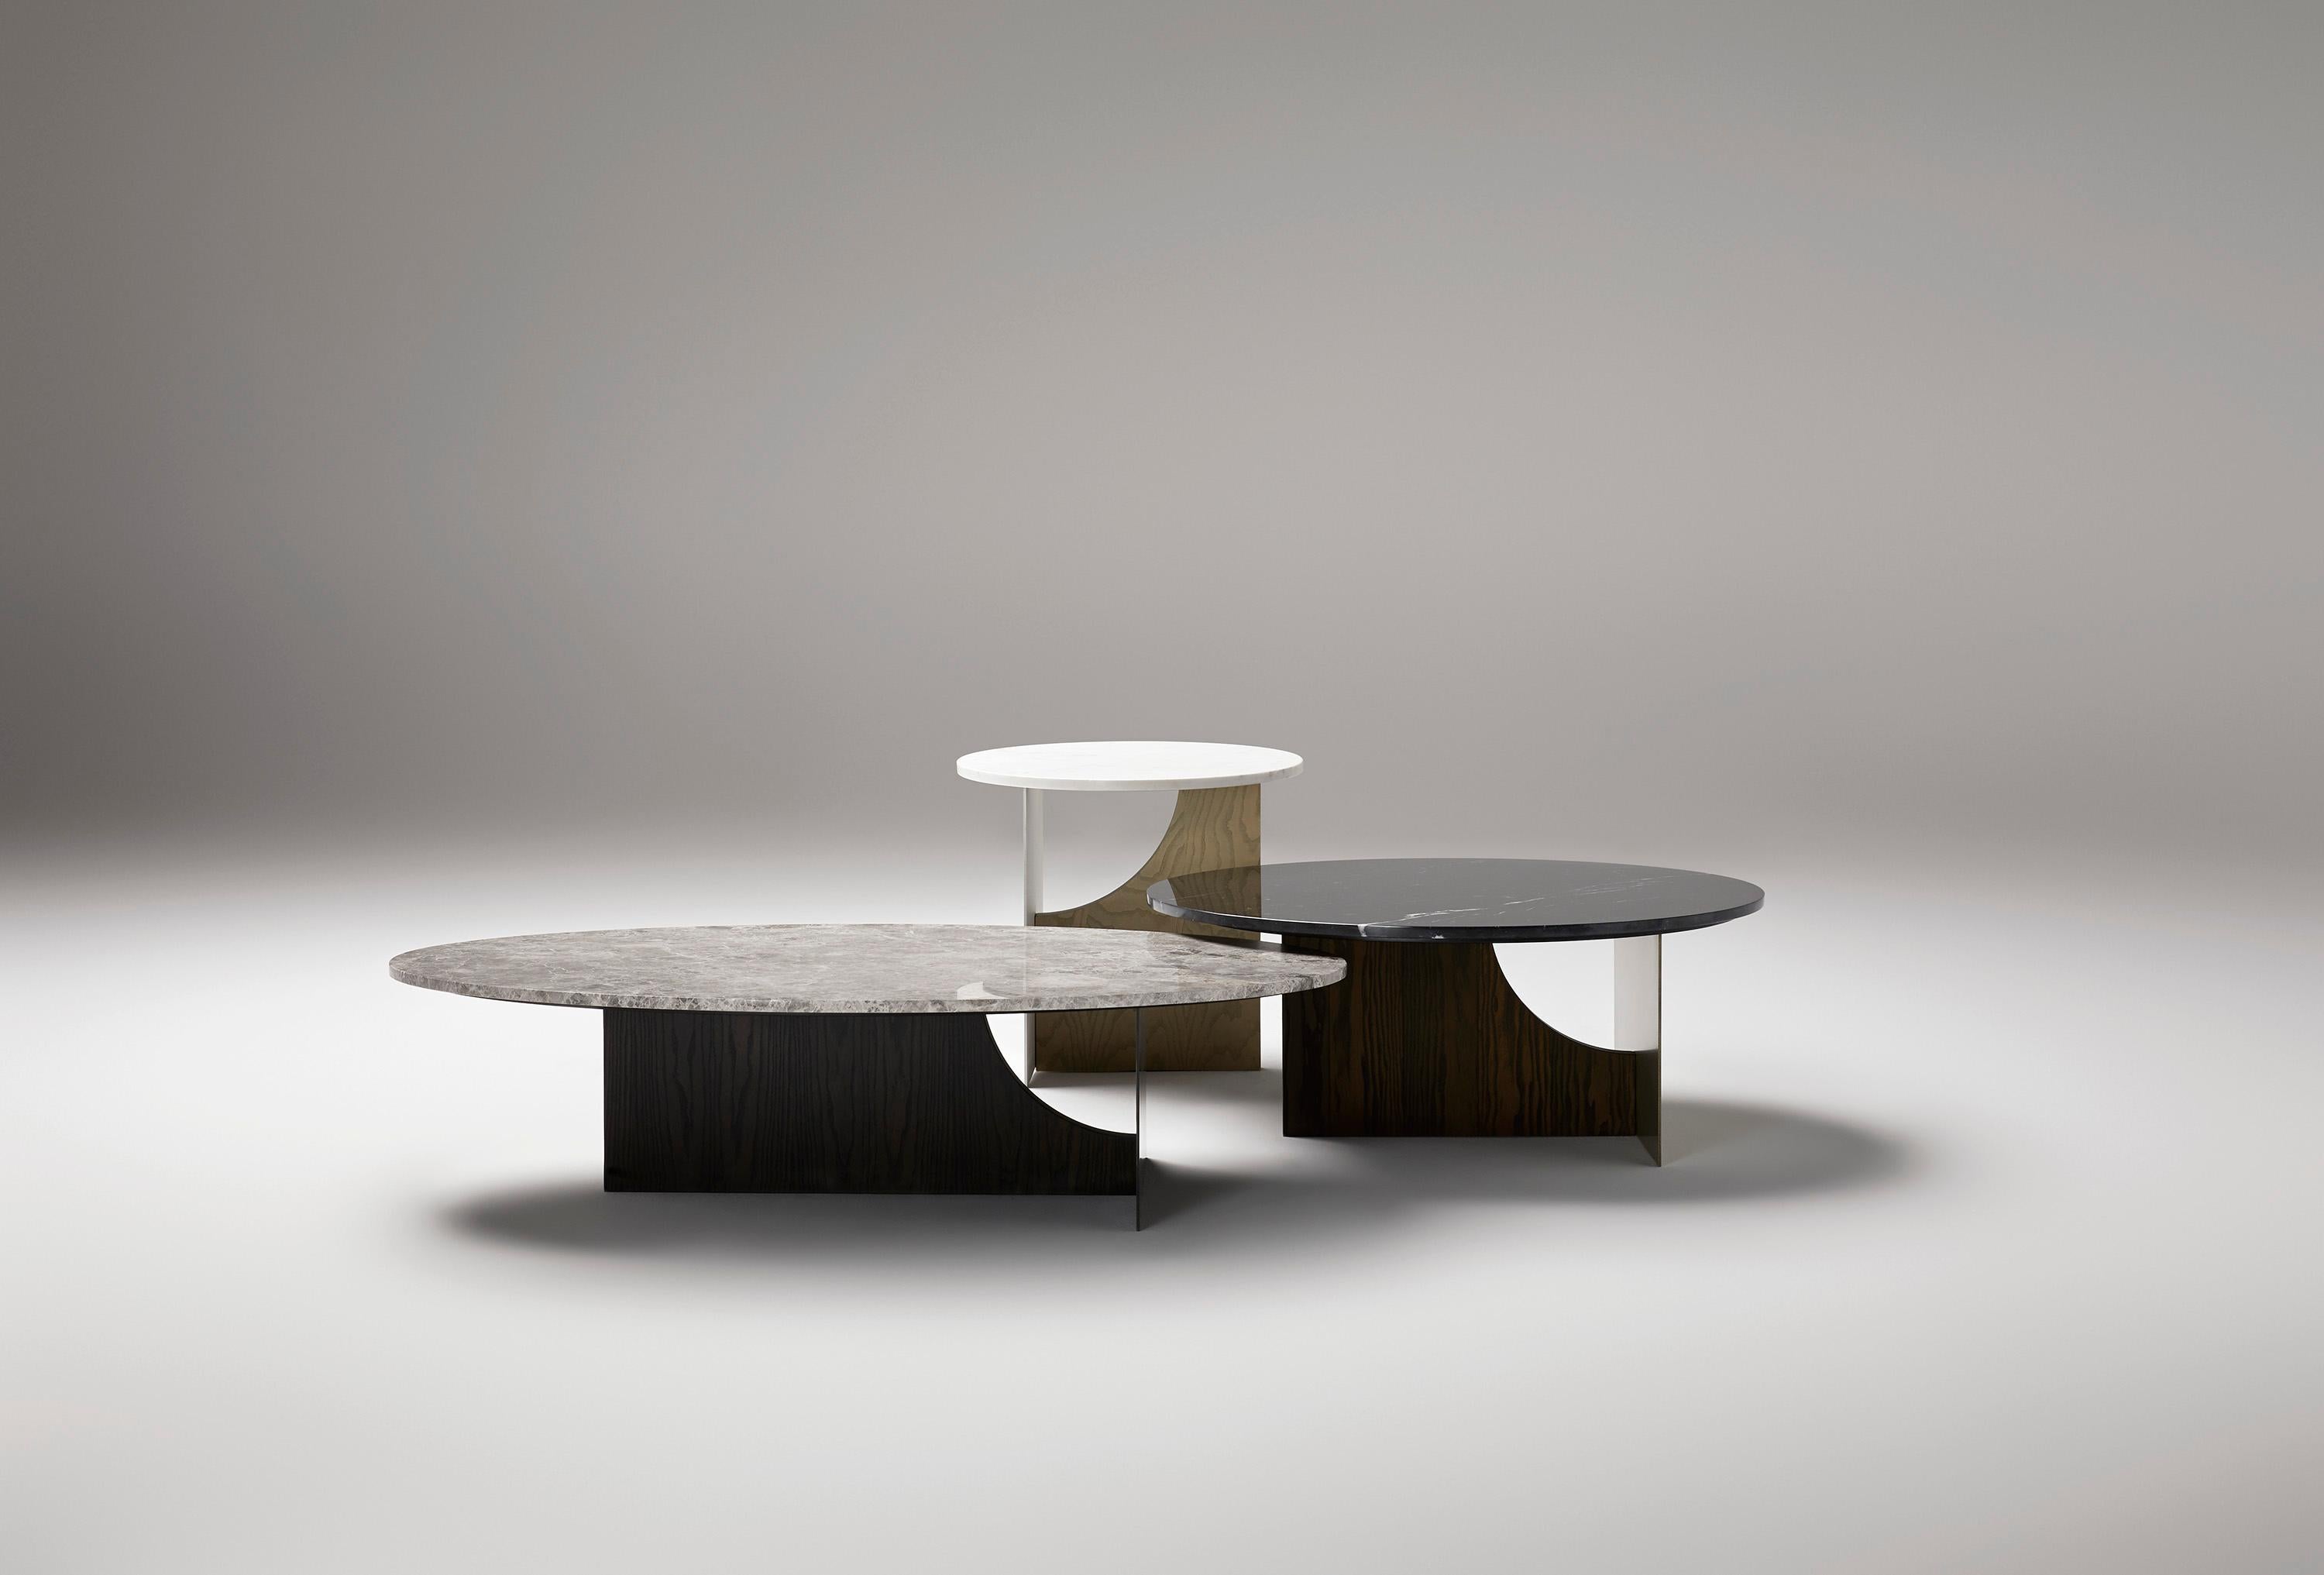 Cette table basse est un meuble sculptural moderne qui habille le salon avec luxe. Il mêle des éléments nobles tels que le marbre pour le plateau, le bois de frêne et le métal pour la base.
Dimensions :
Largeur : 105 cm - 41.3